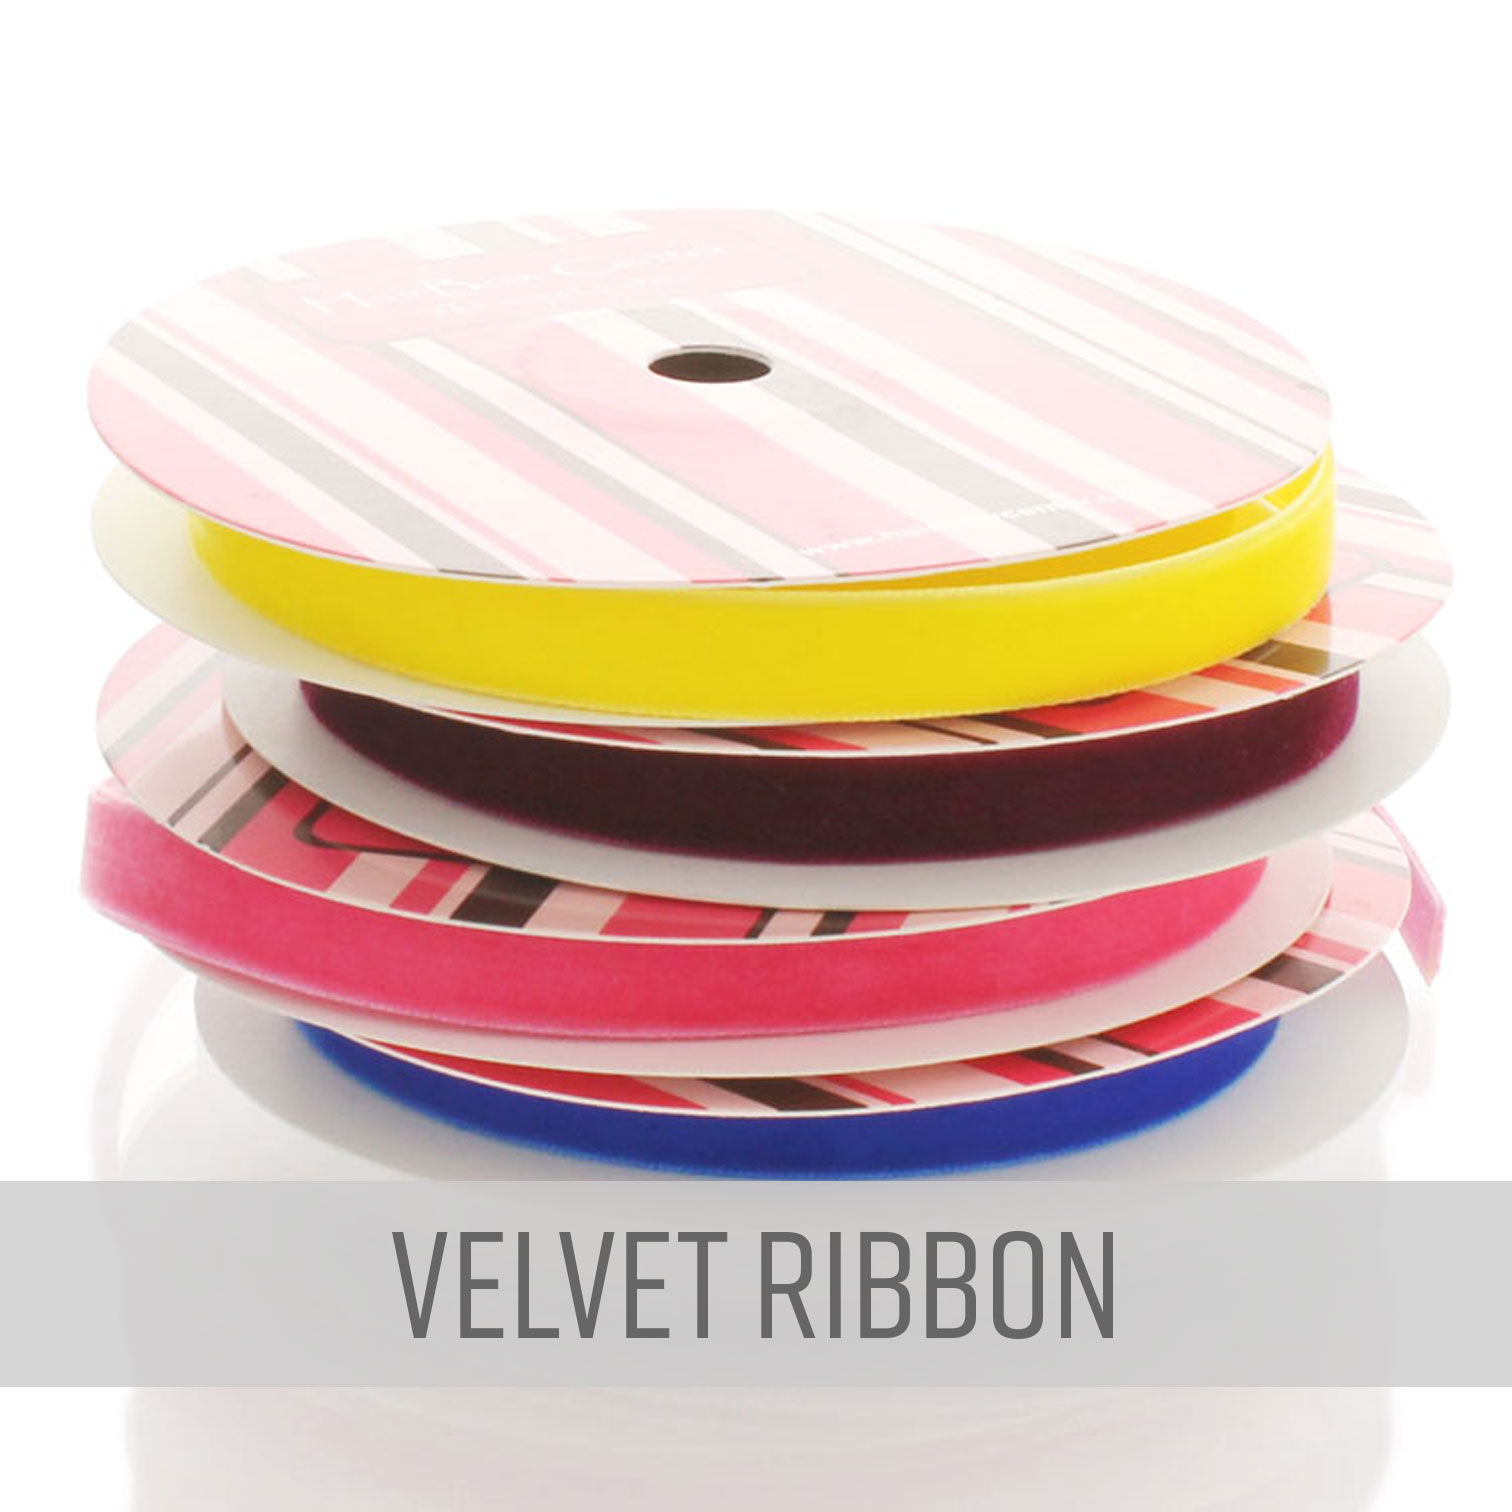 Velvet Ribbon